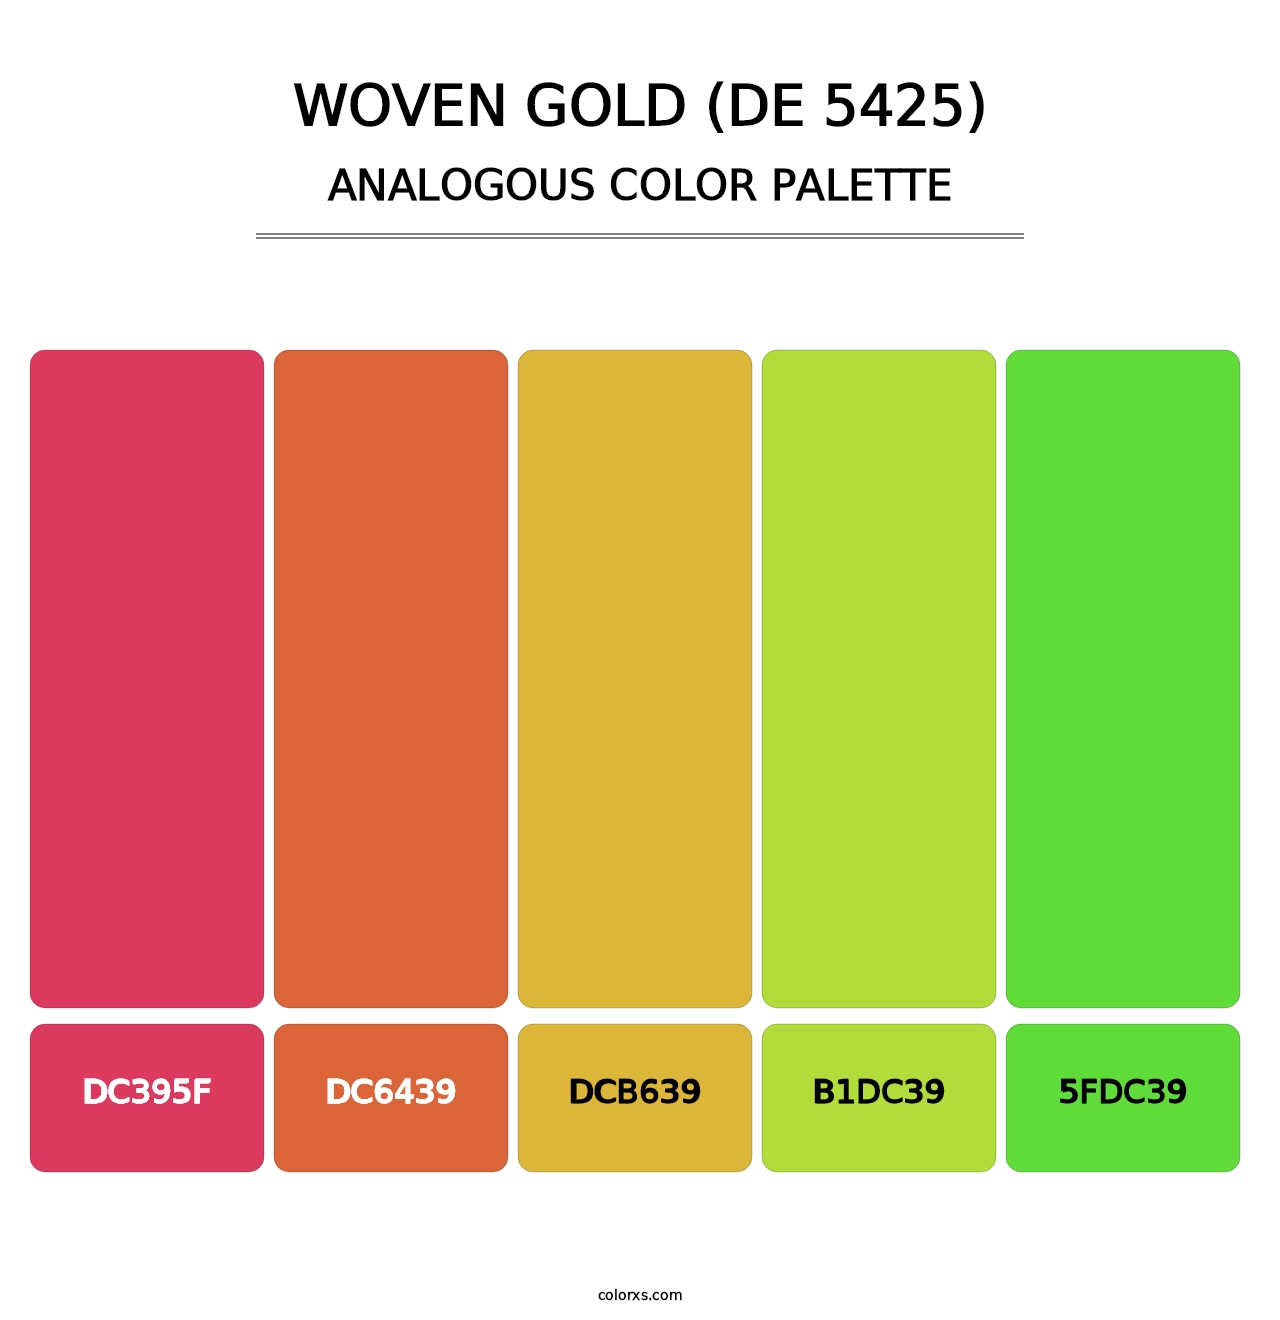 Woven Gold (DE 5425) - Analogous Color Palette